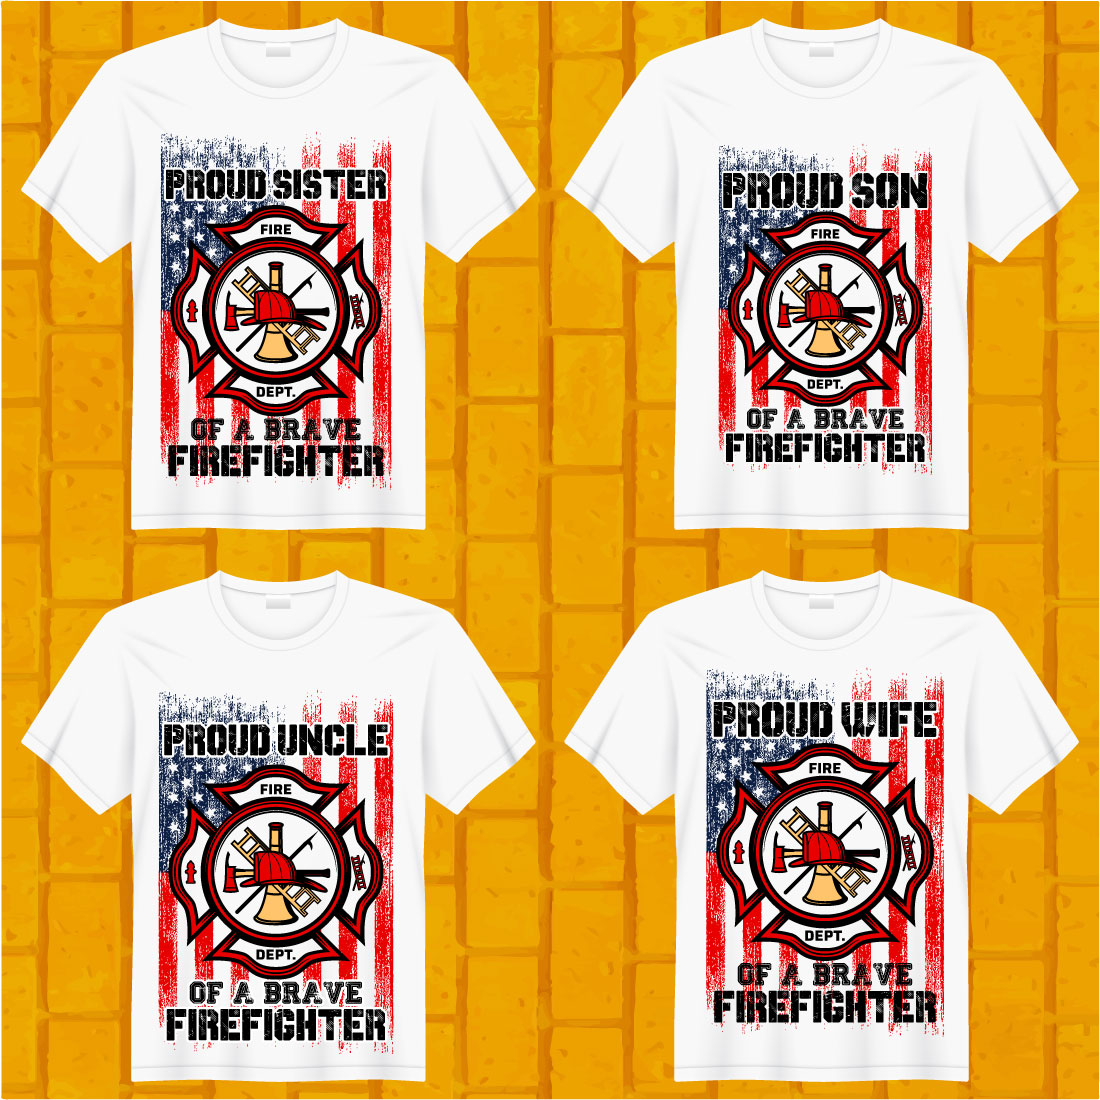 Firefighter T-shirt Design Bundle cover image.